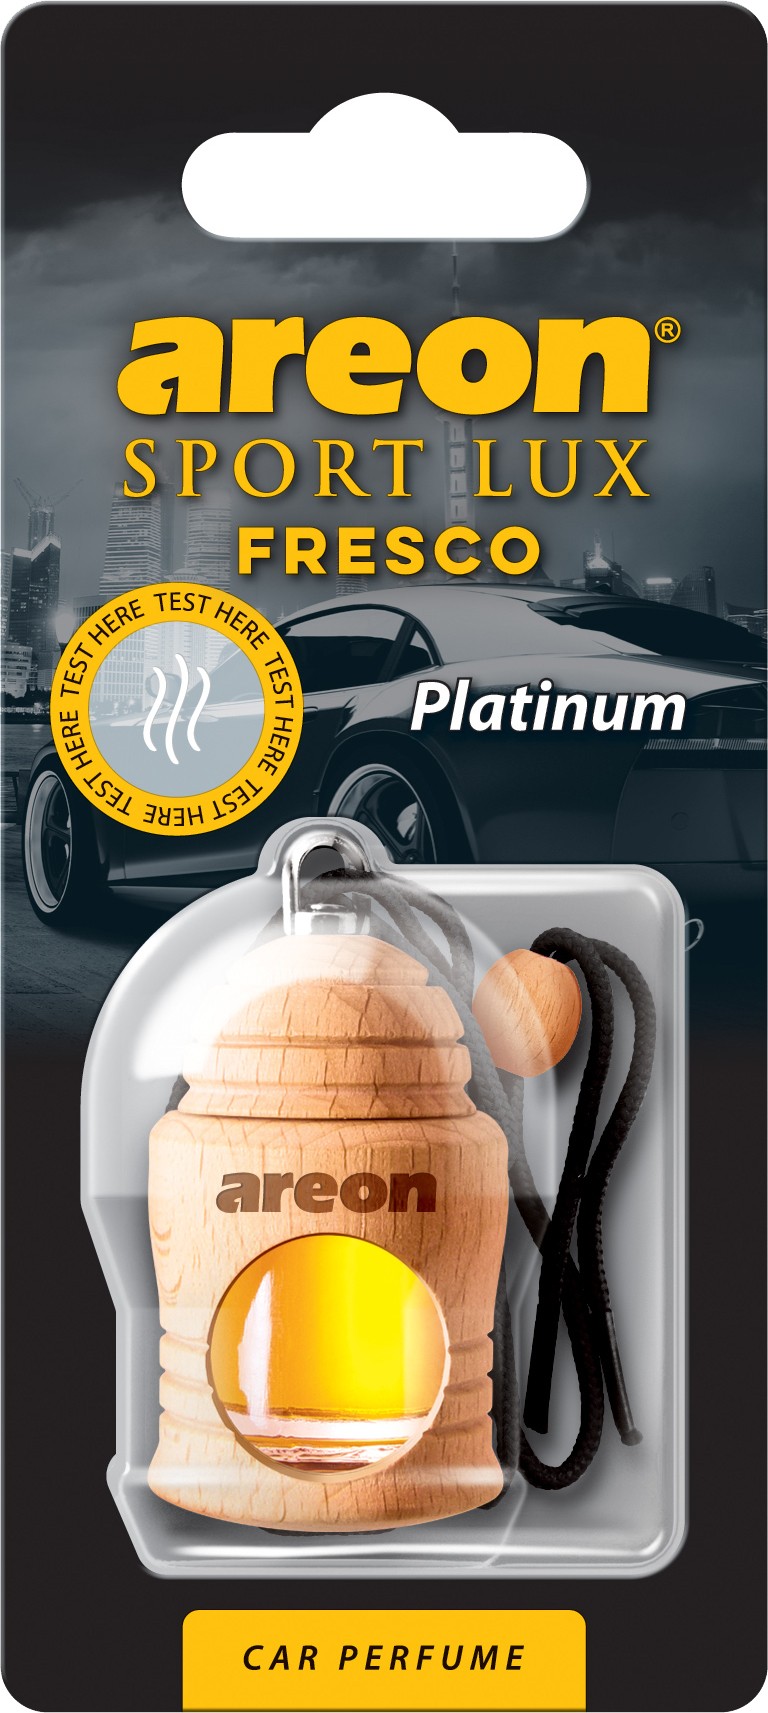 3x Original Areon FRESCO Autoparfüm Duftdose Duftbaum Lufterfrischer LUX PLATIN von Tuning Fanatics